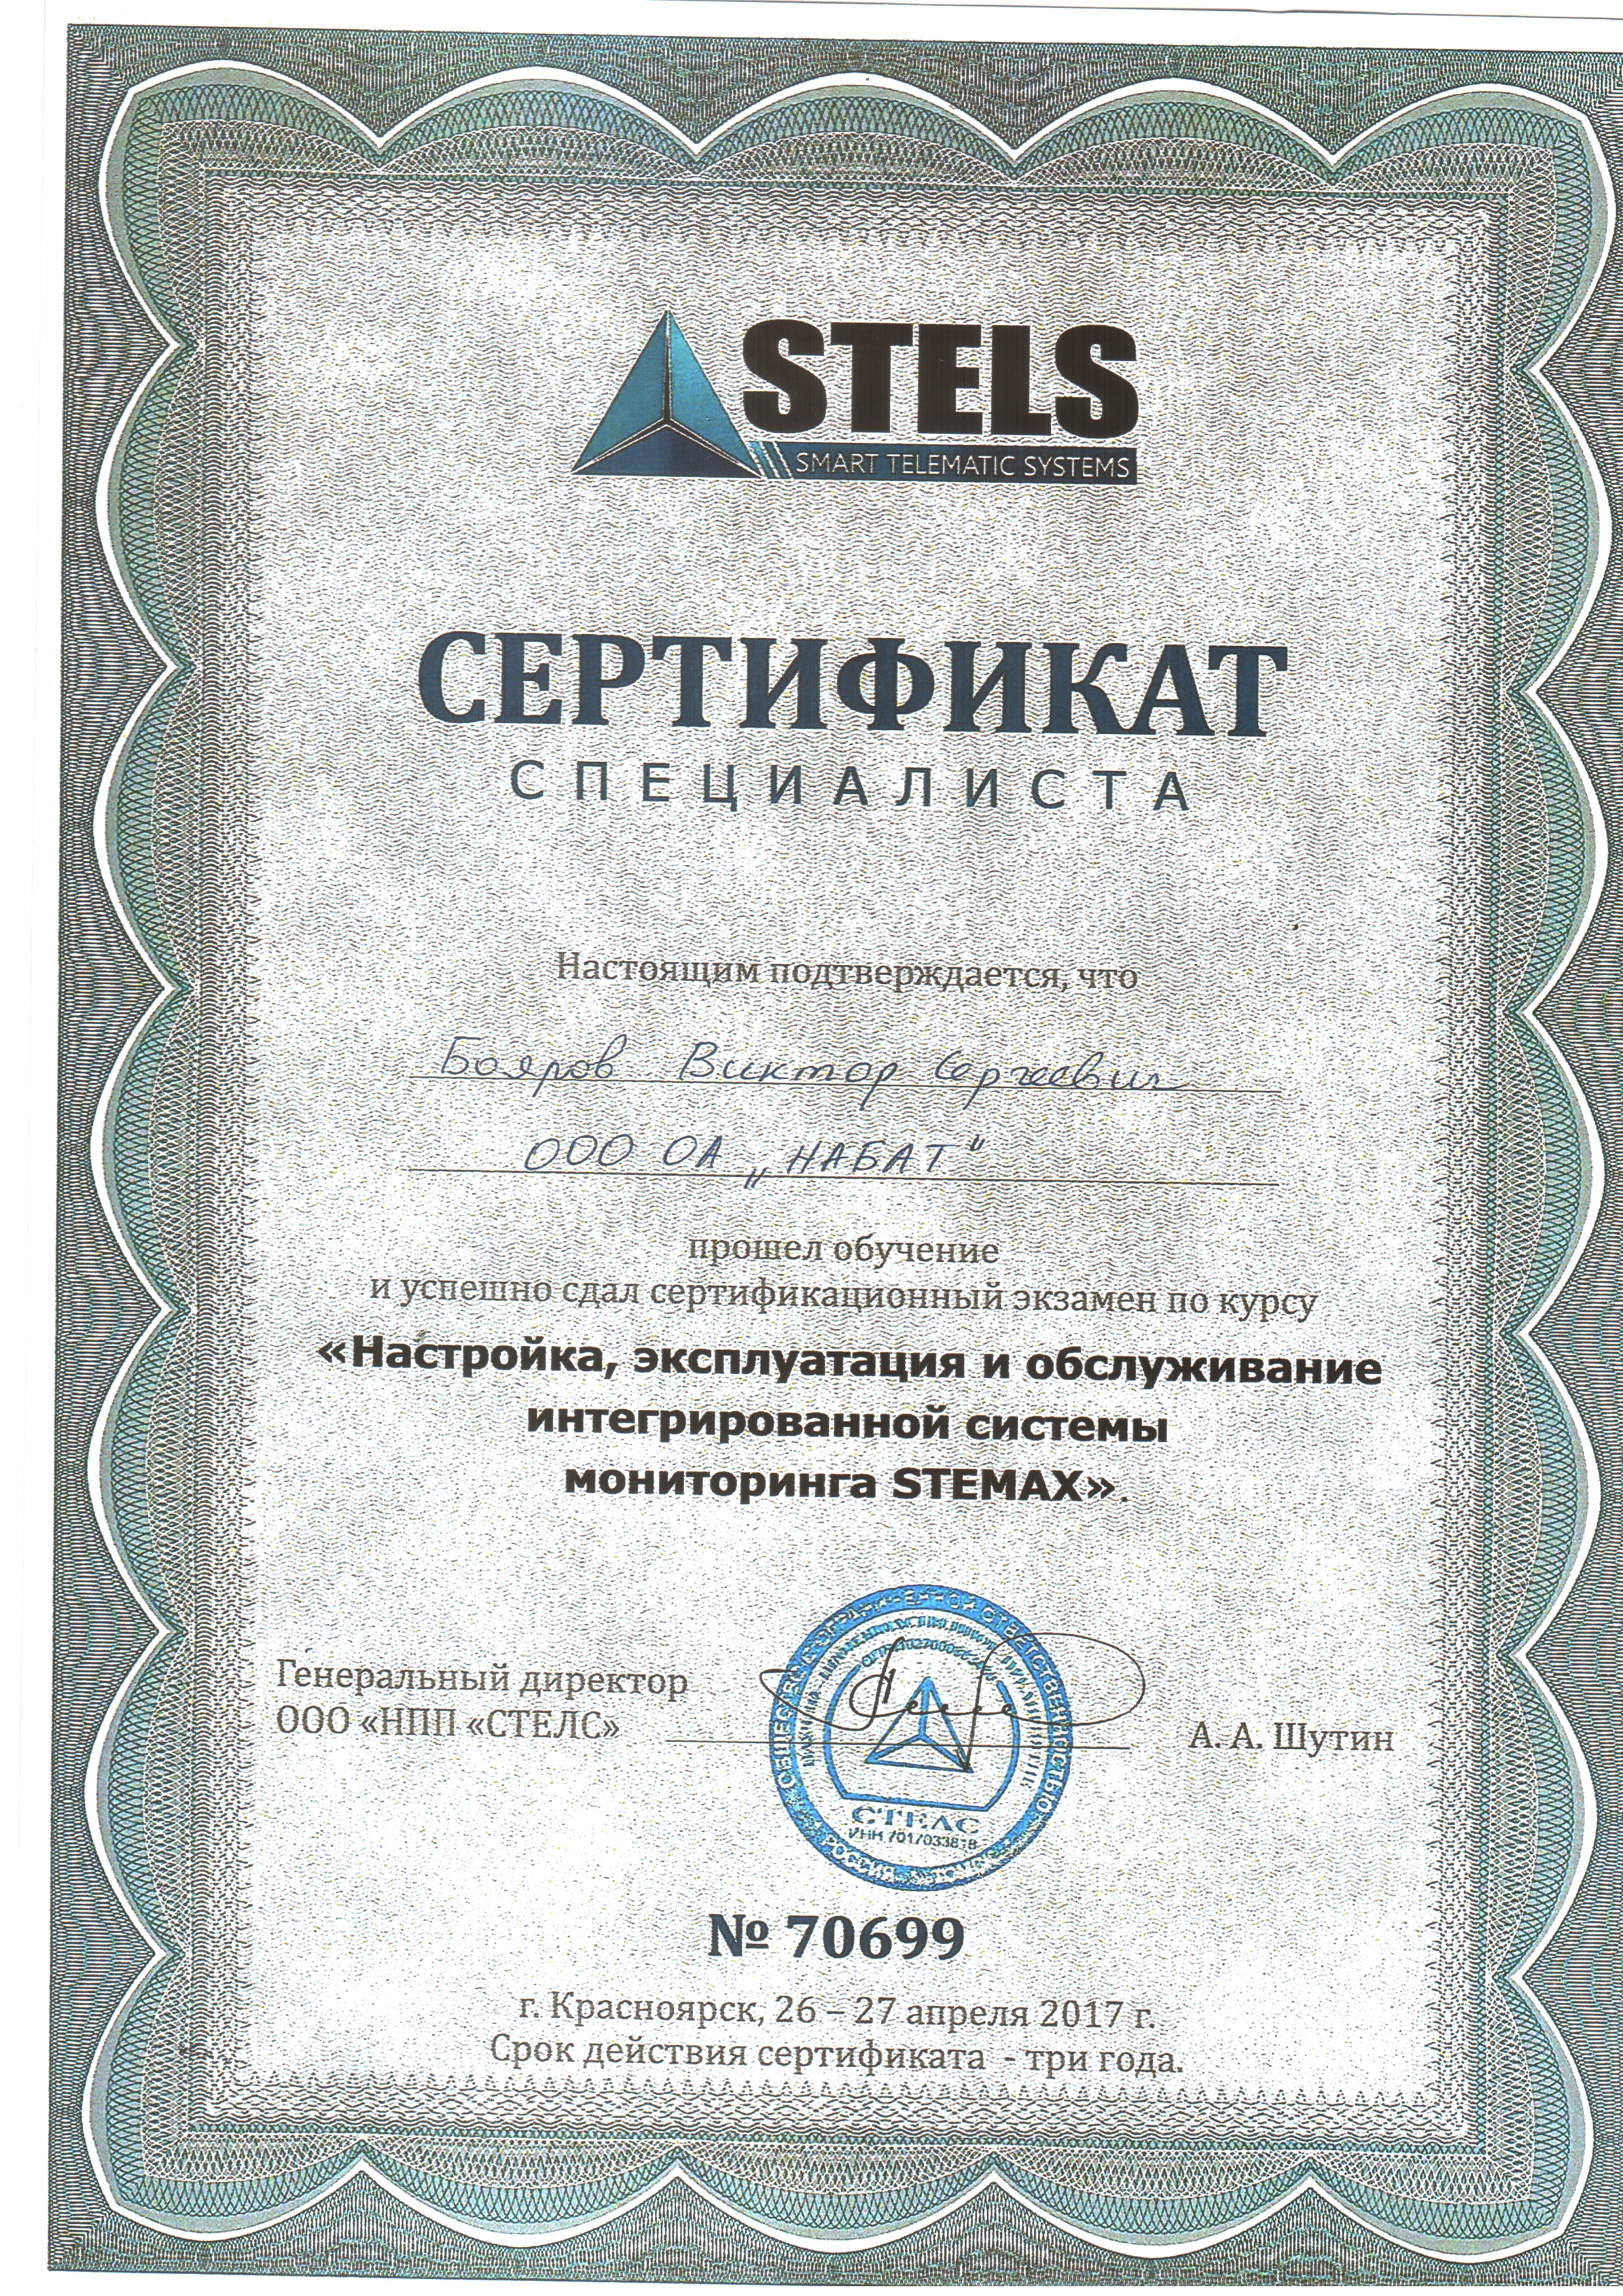 Сертификат специалиста. Награждается Бояров Виктор Сергеевич